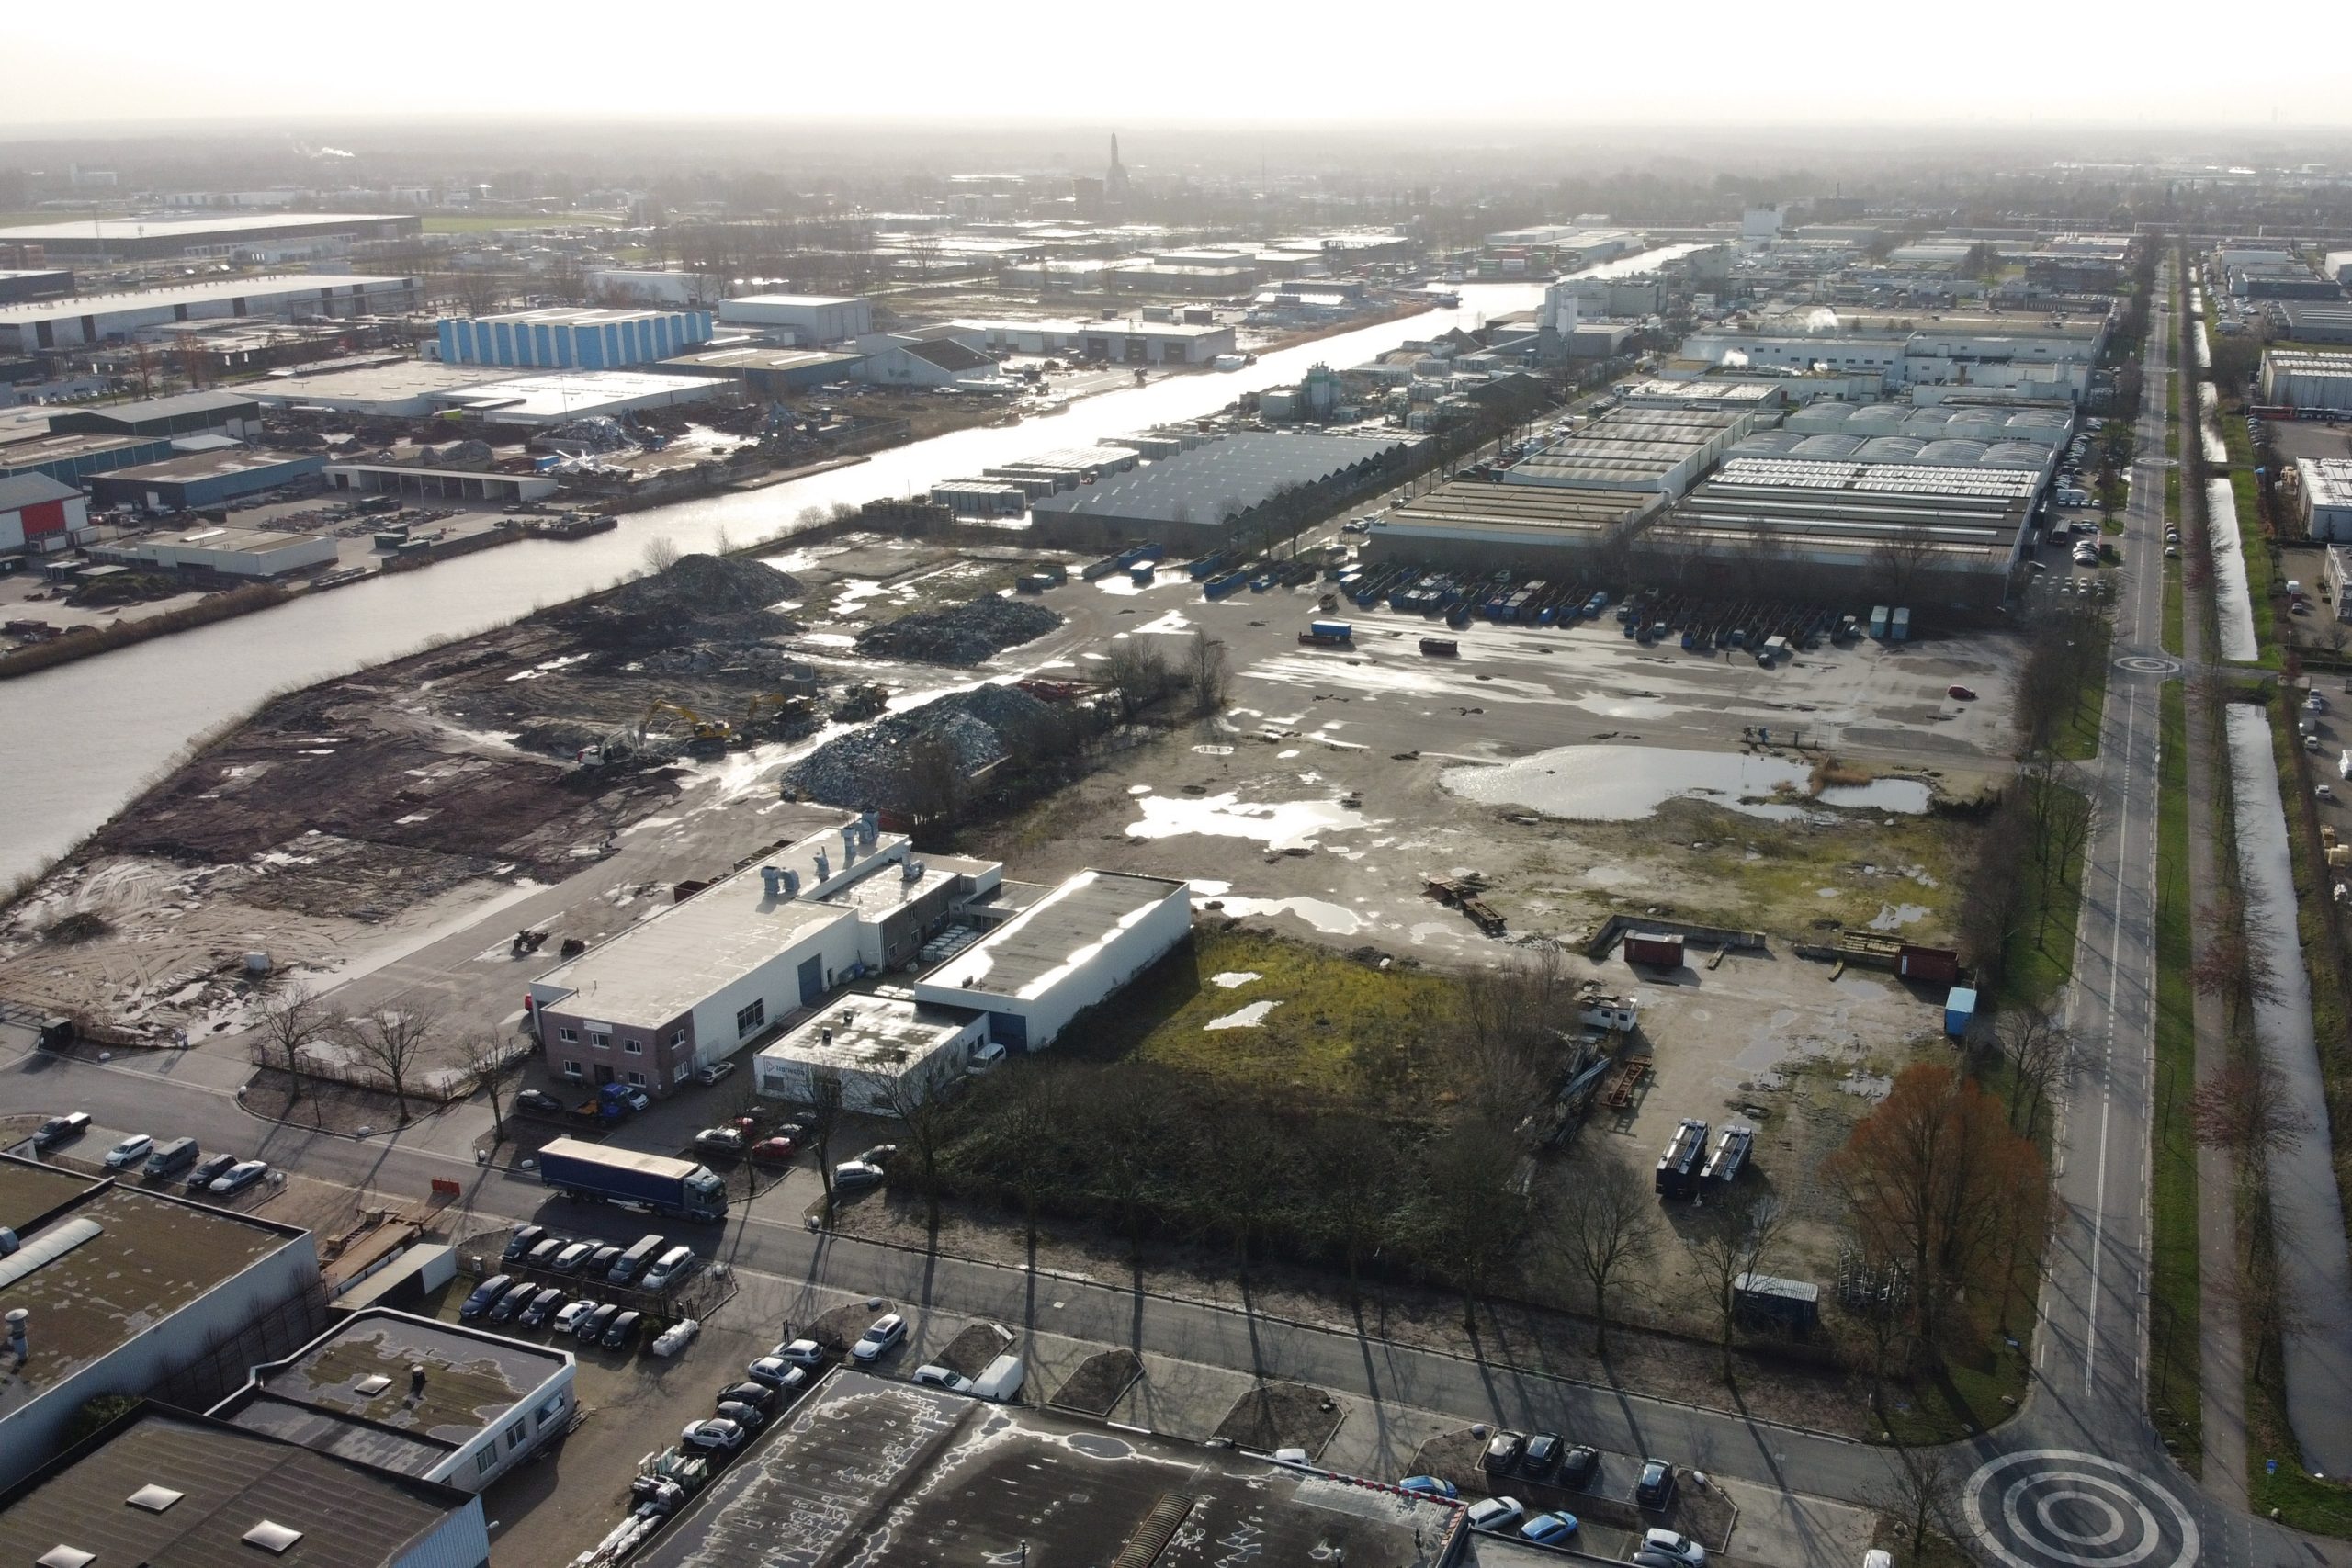 VDG Real Estate en Next Level kopen kavel van 15.440 m2 in Waalwijk als aanvulling op reeds aangekochte kavel van 41.387 m2